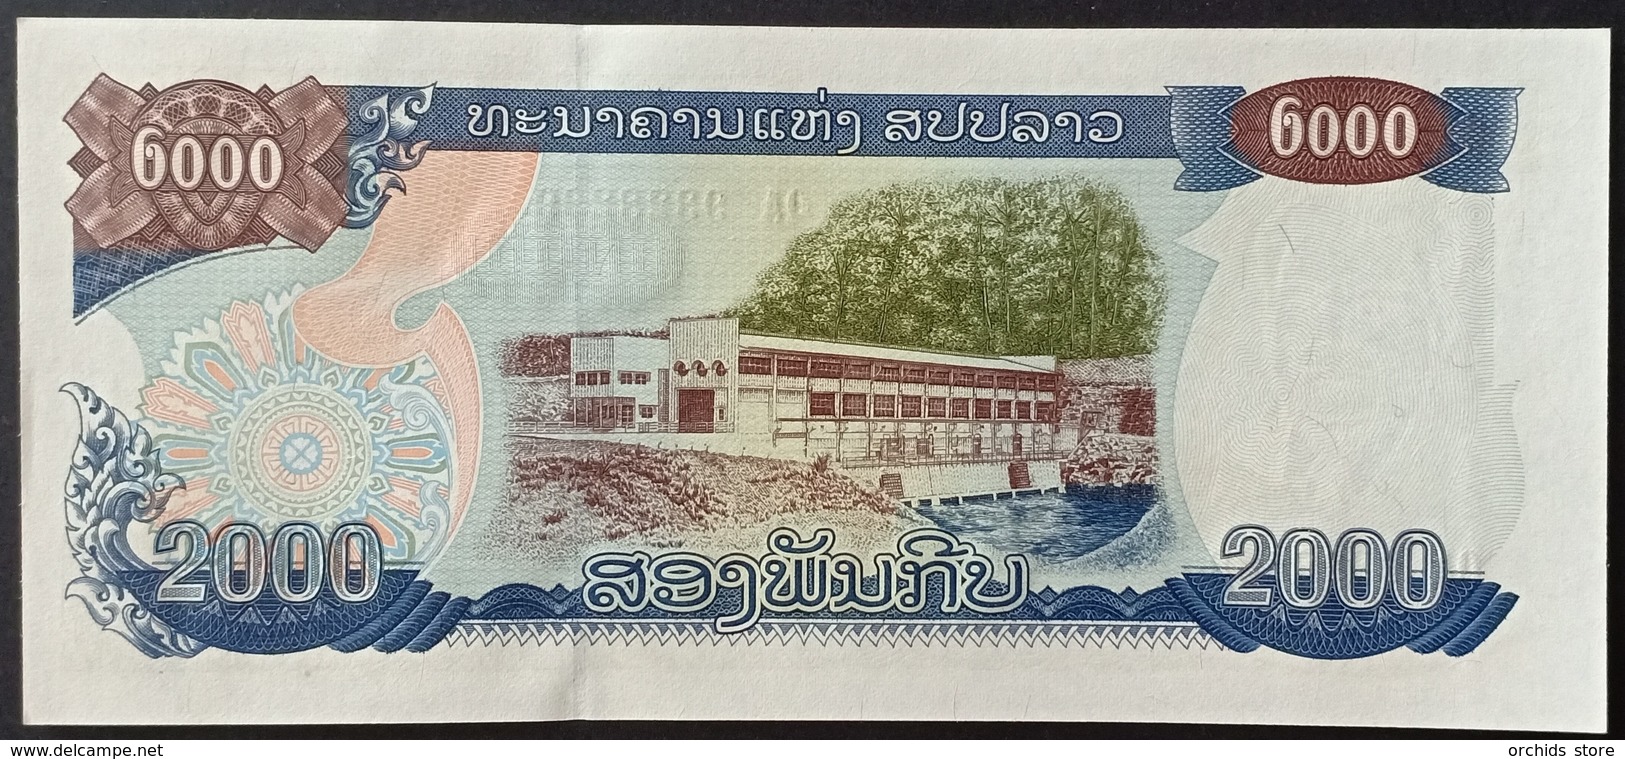 BD1 - Laos 2000 Kip Banknote 2003 #QA 9328289 UNC - Laos